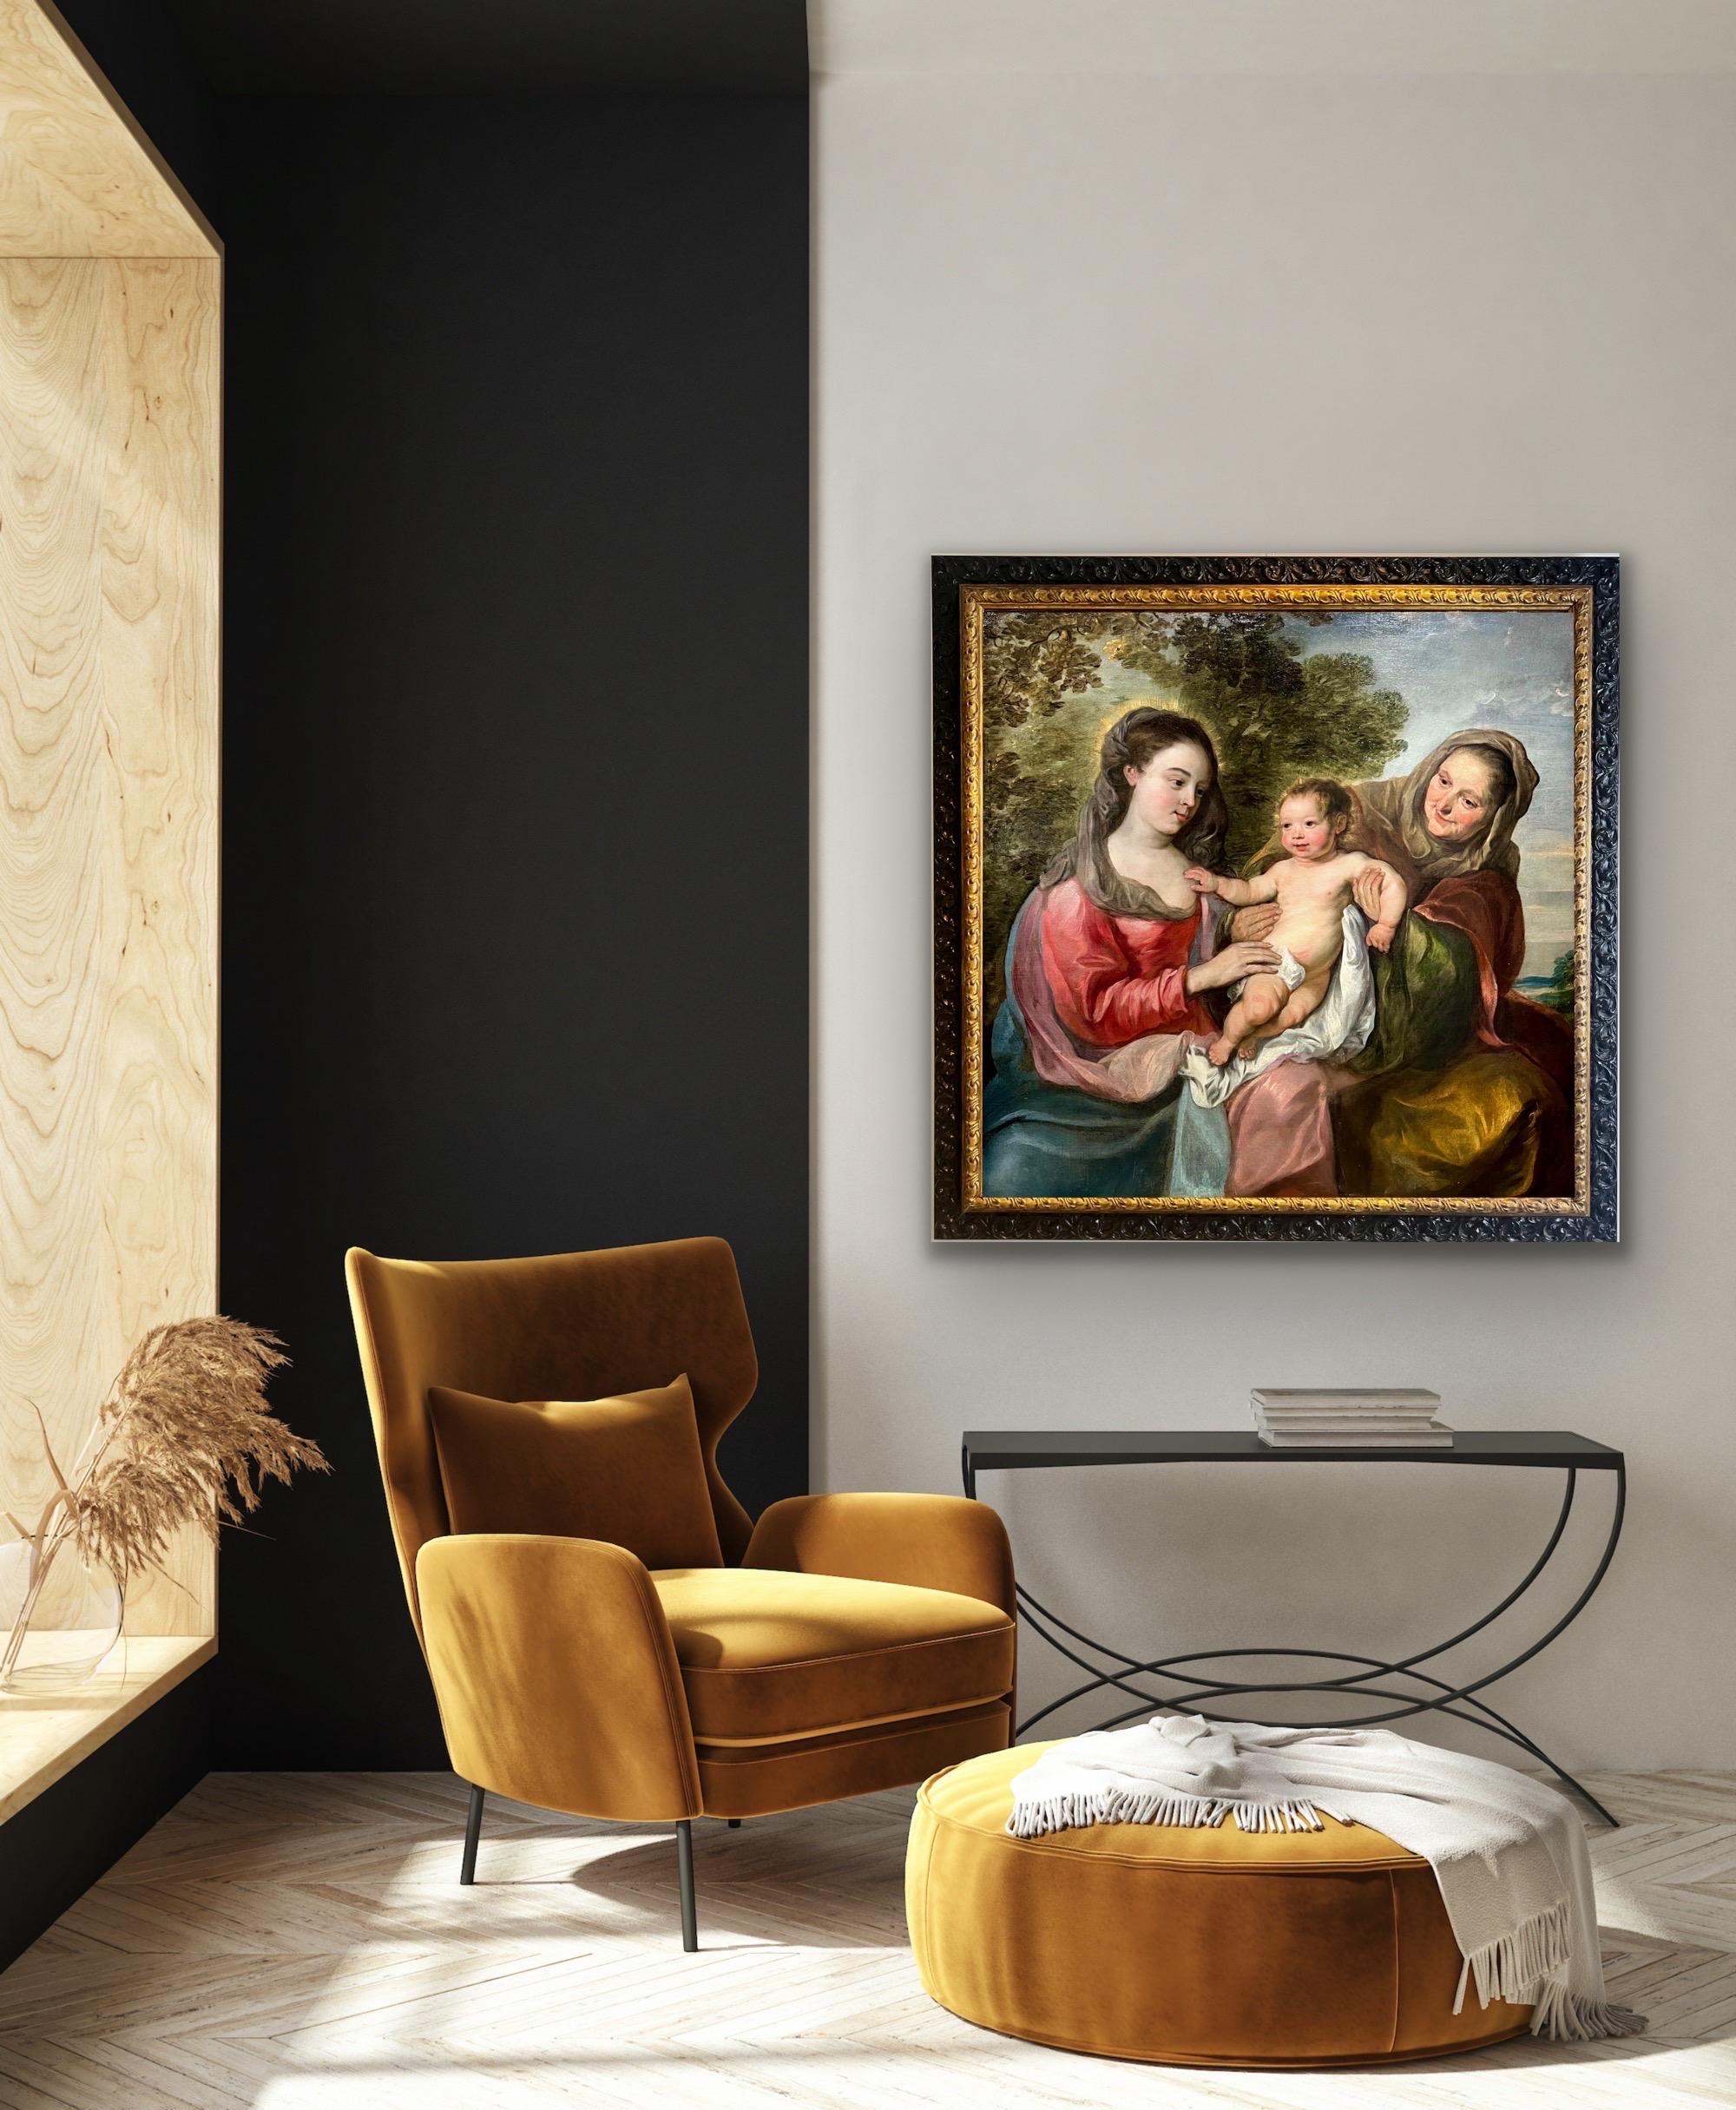 Gemälde eines Alten Meisters aus dem 17. Jahrhundert, das das Christuskind mit Maria und der Heiligen Anne-Marie darstellt und Nicolas de Liemaker zugeschrieben wird

Der Künstler des vorliegenden Werks hat den liebevollen Blick Marias, die ihr Kind